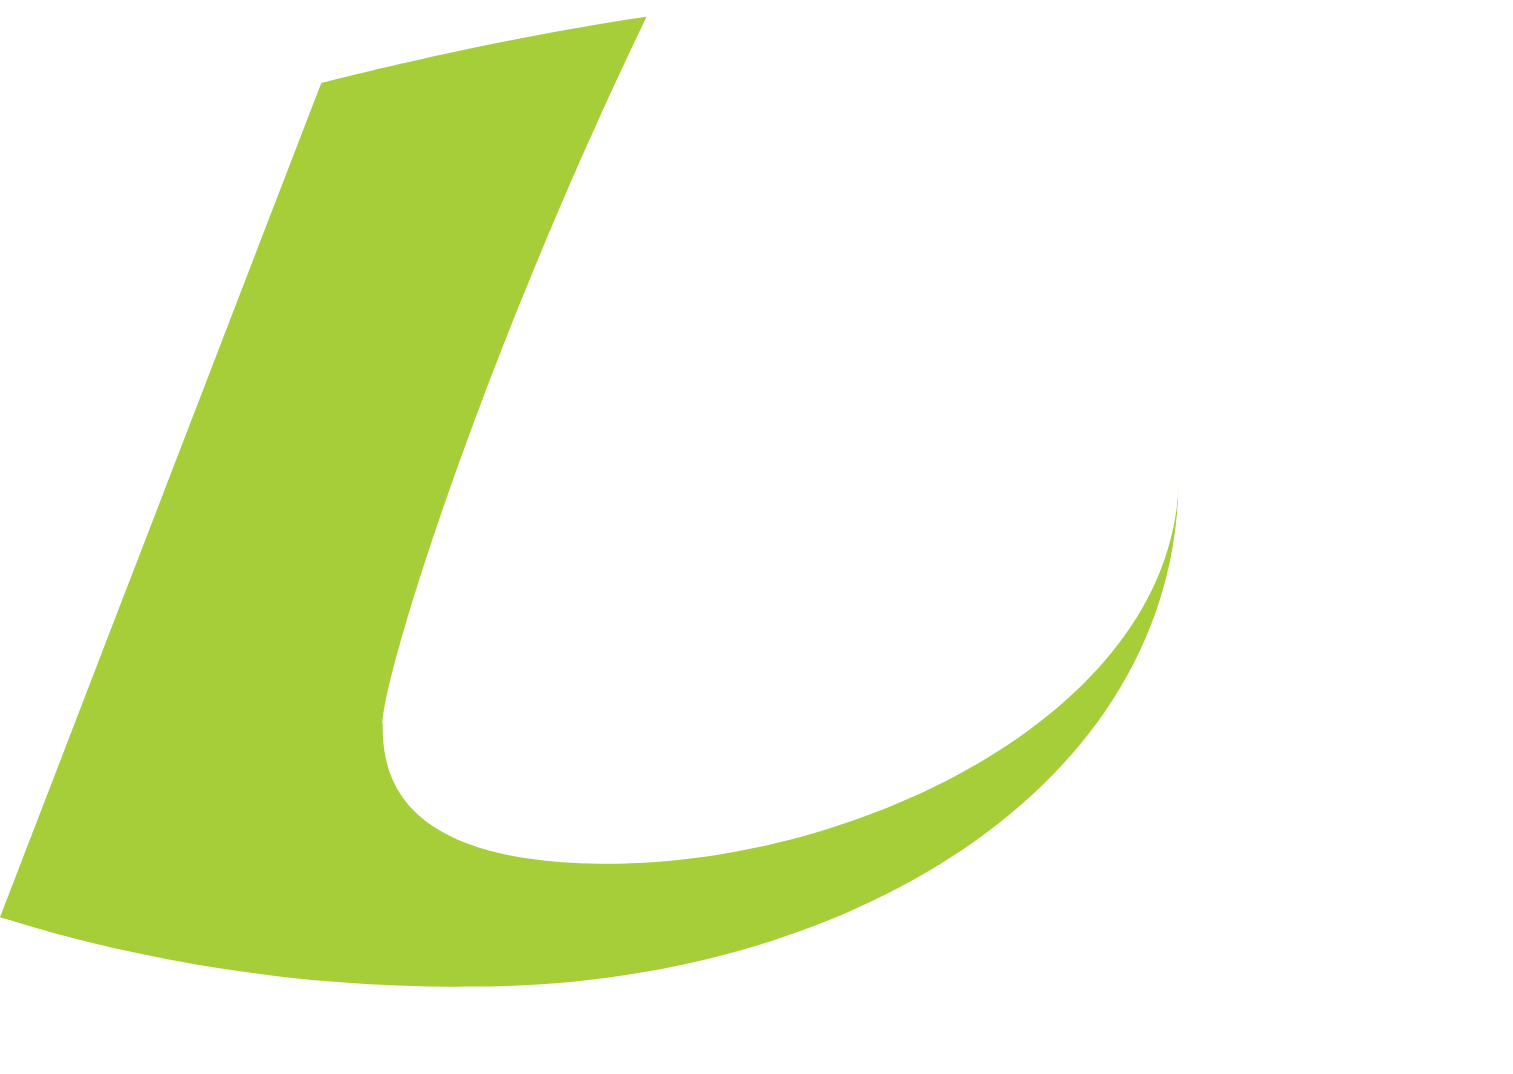 loanDepot logo for dark backgrounds (transparent PNG)